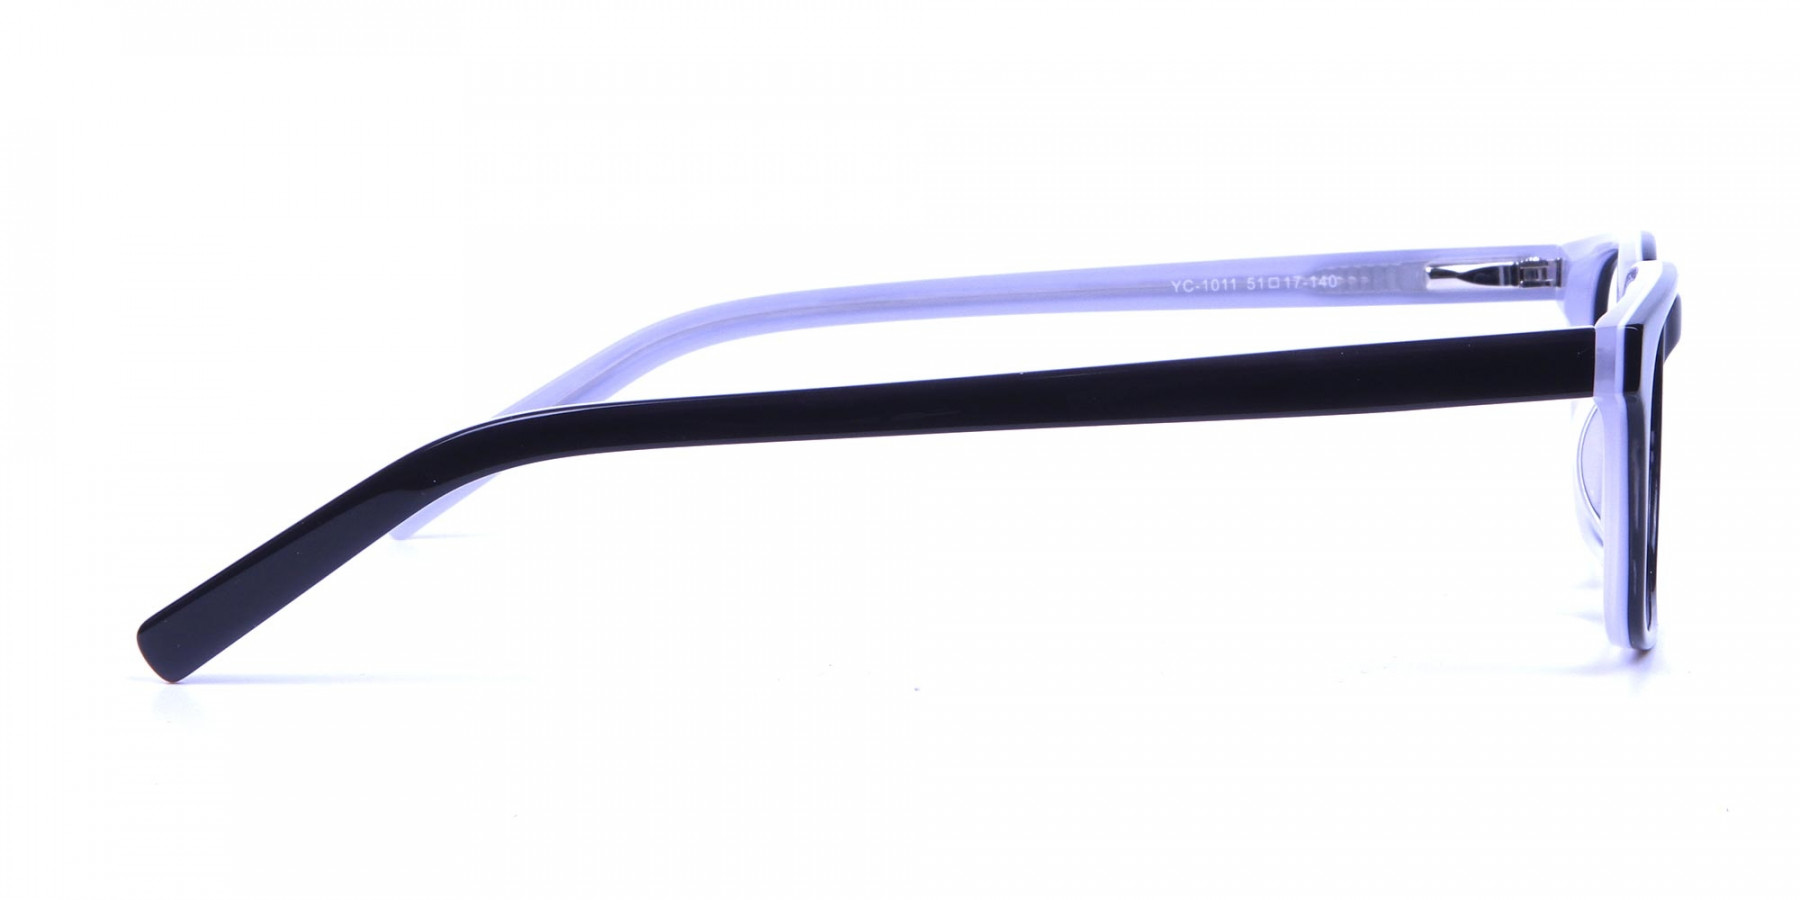 Unisex Black & White Rectangular Glasses